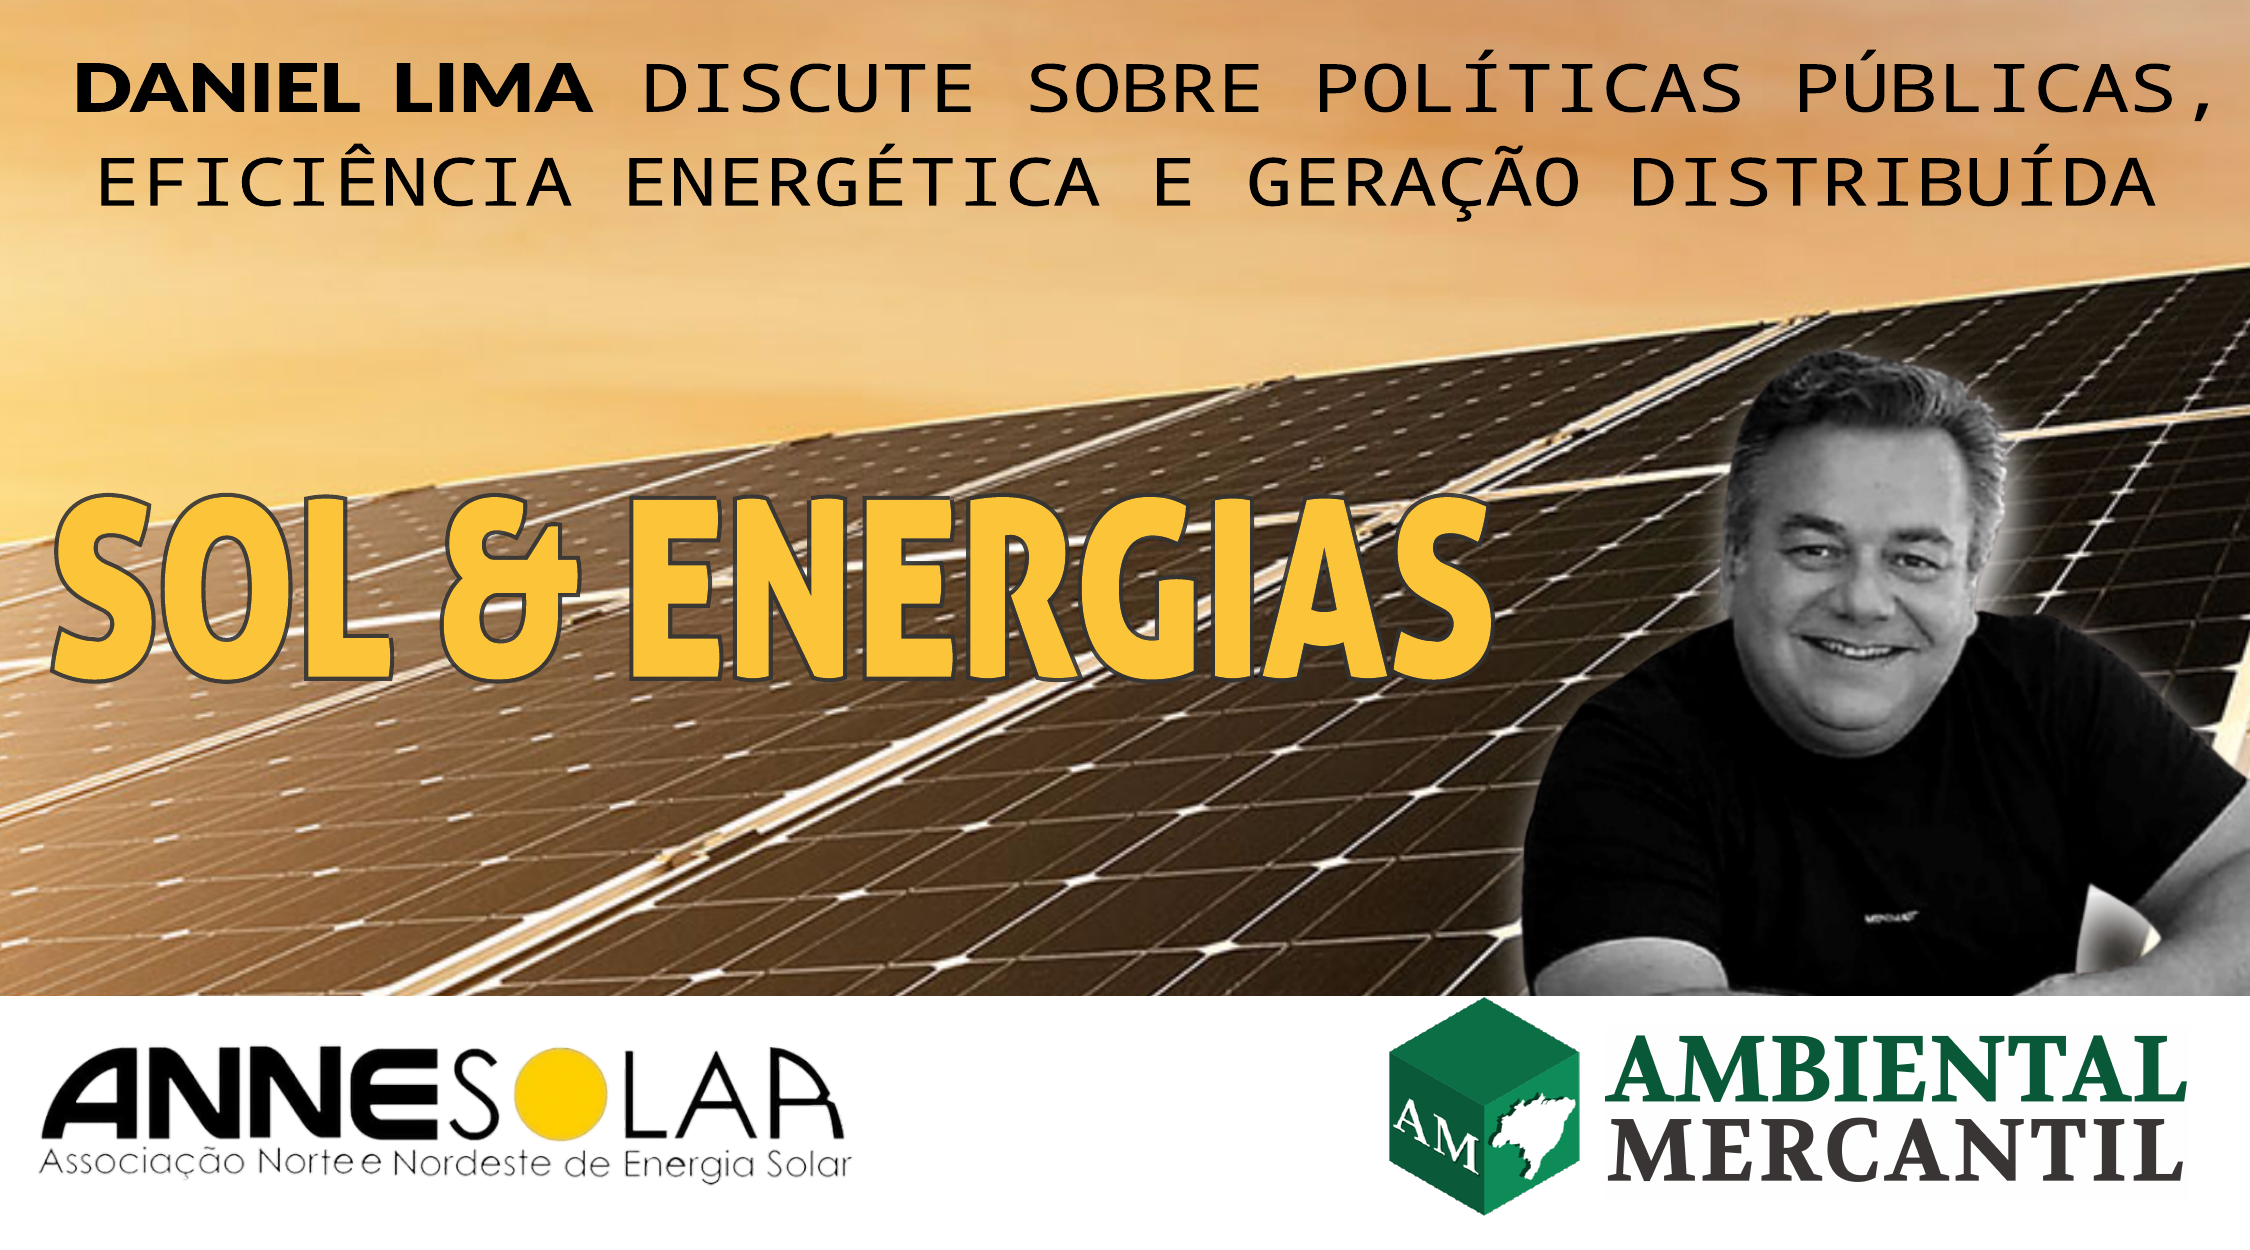 Daniel Lima é colunista do editorial AMBIENTAL MERCANTIL ENERGIAS